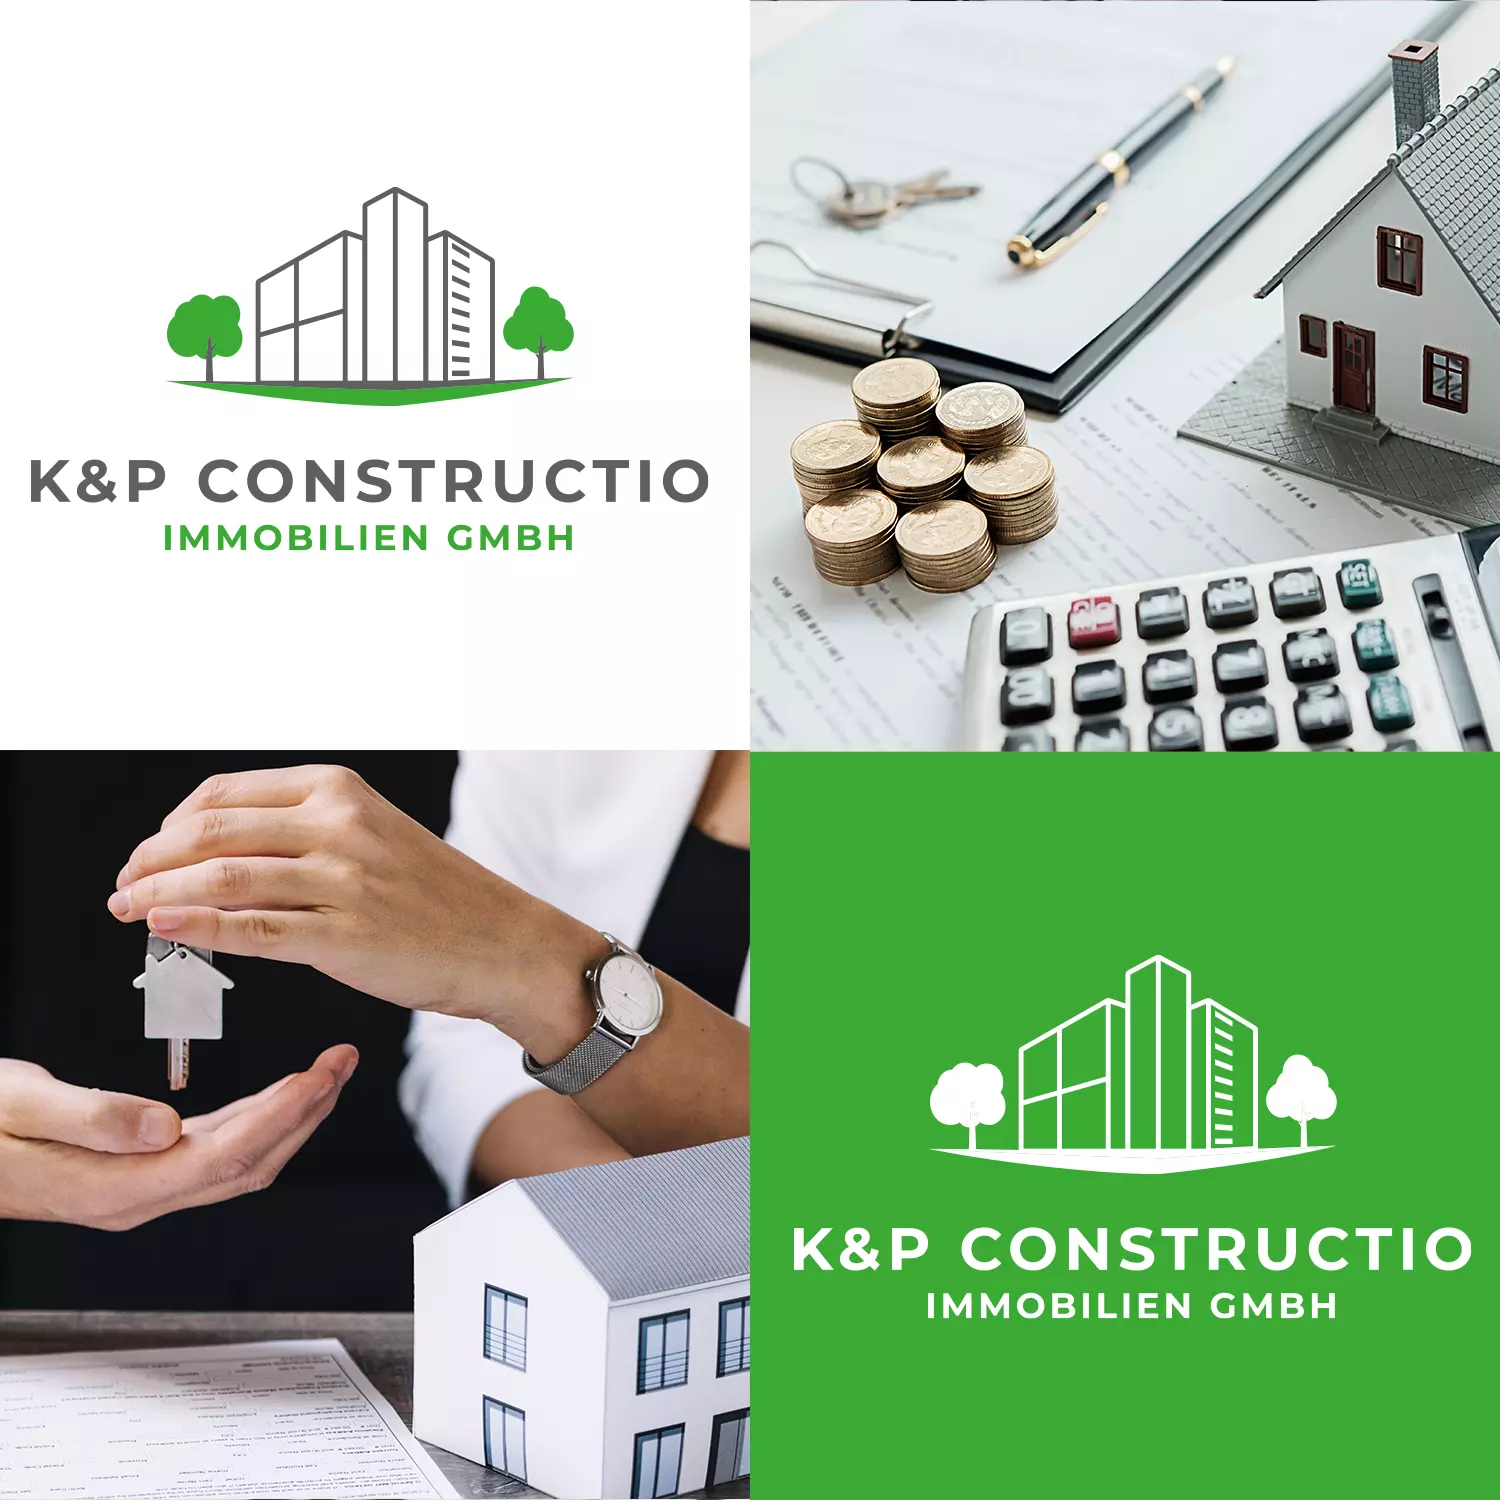 Logodesign K&P Constructio Immobilien GmbH in Obertshausen